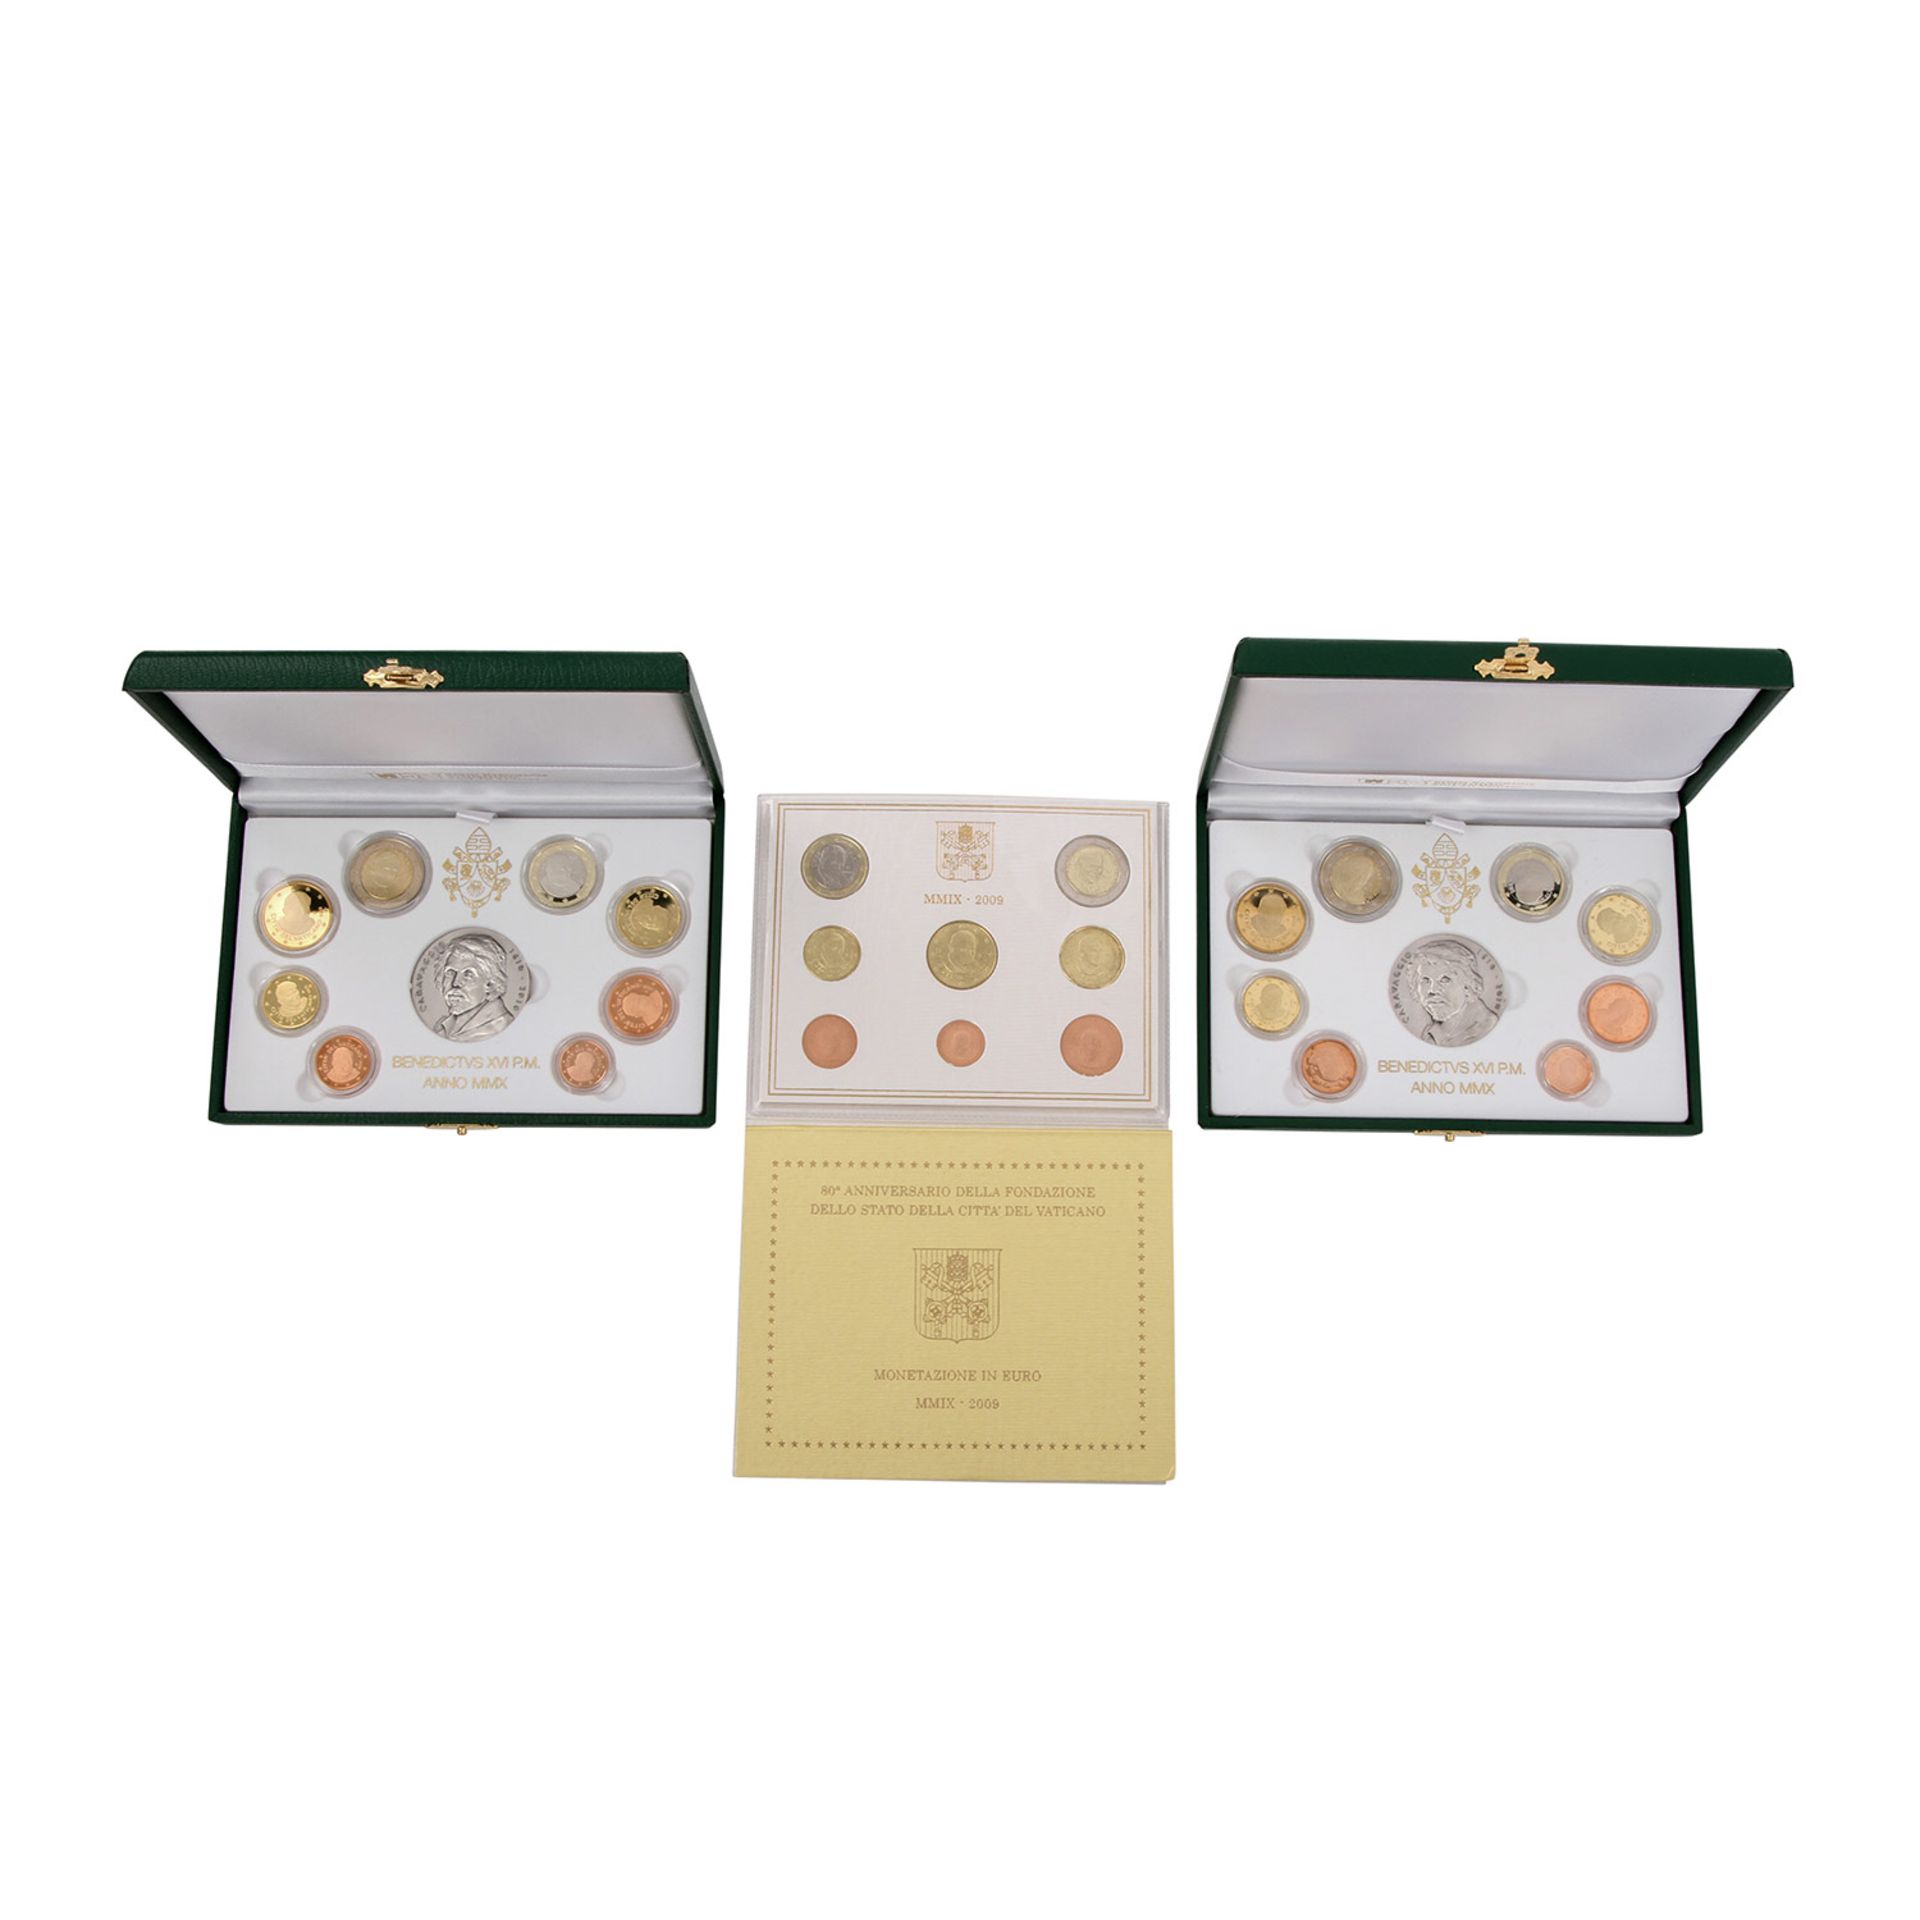 Vatikan - 2 x Euro-Kursmünzensatz 2009 sowie 2 x Prestige Kursmünzensatz + Medaille 2010. Bitte